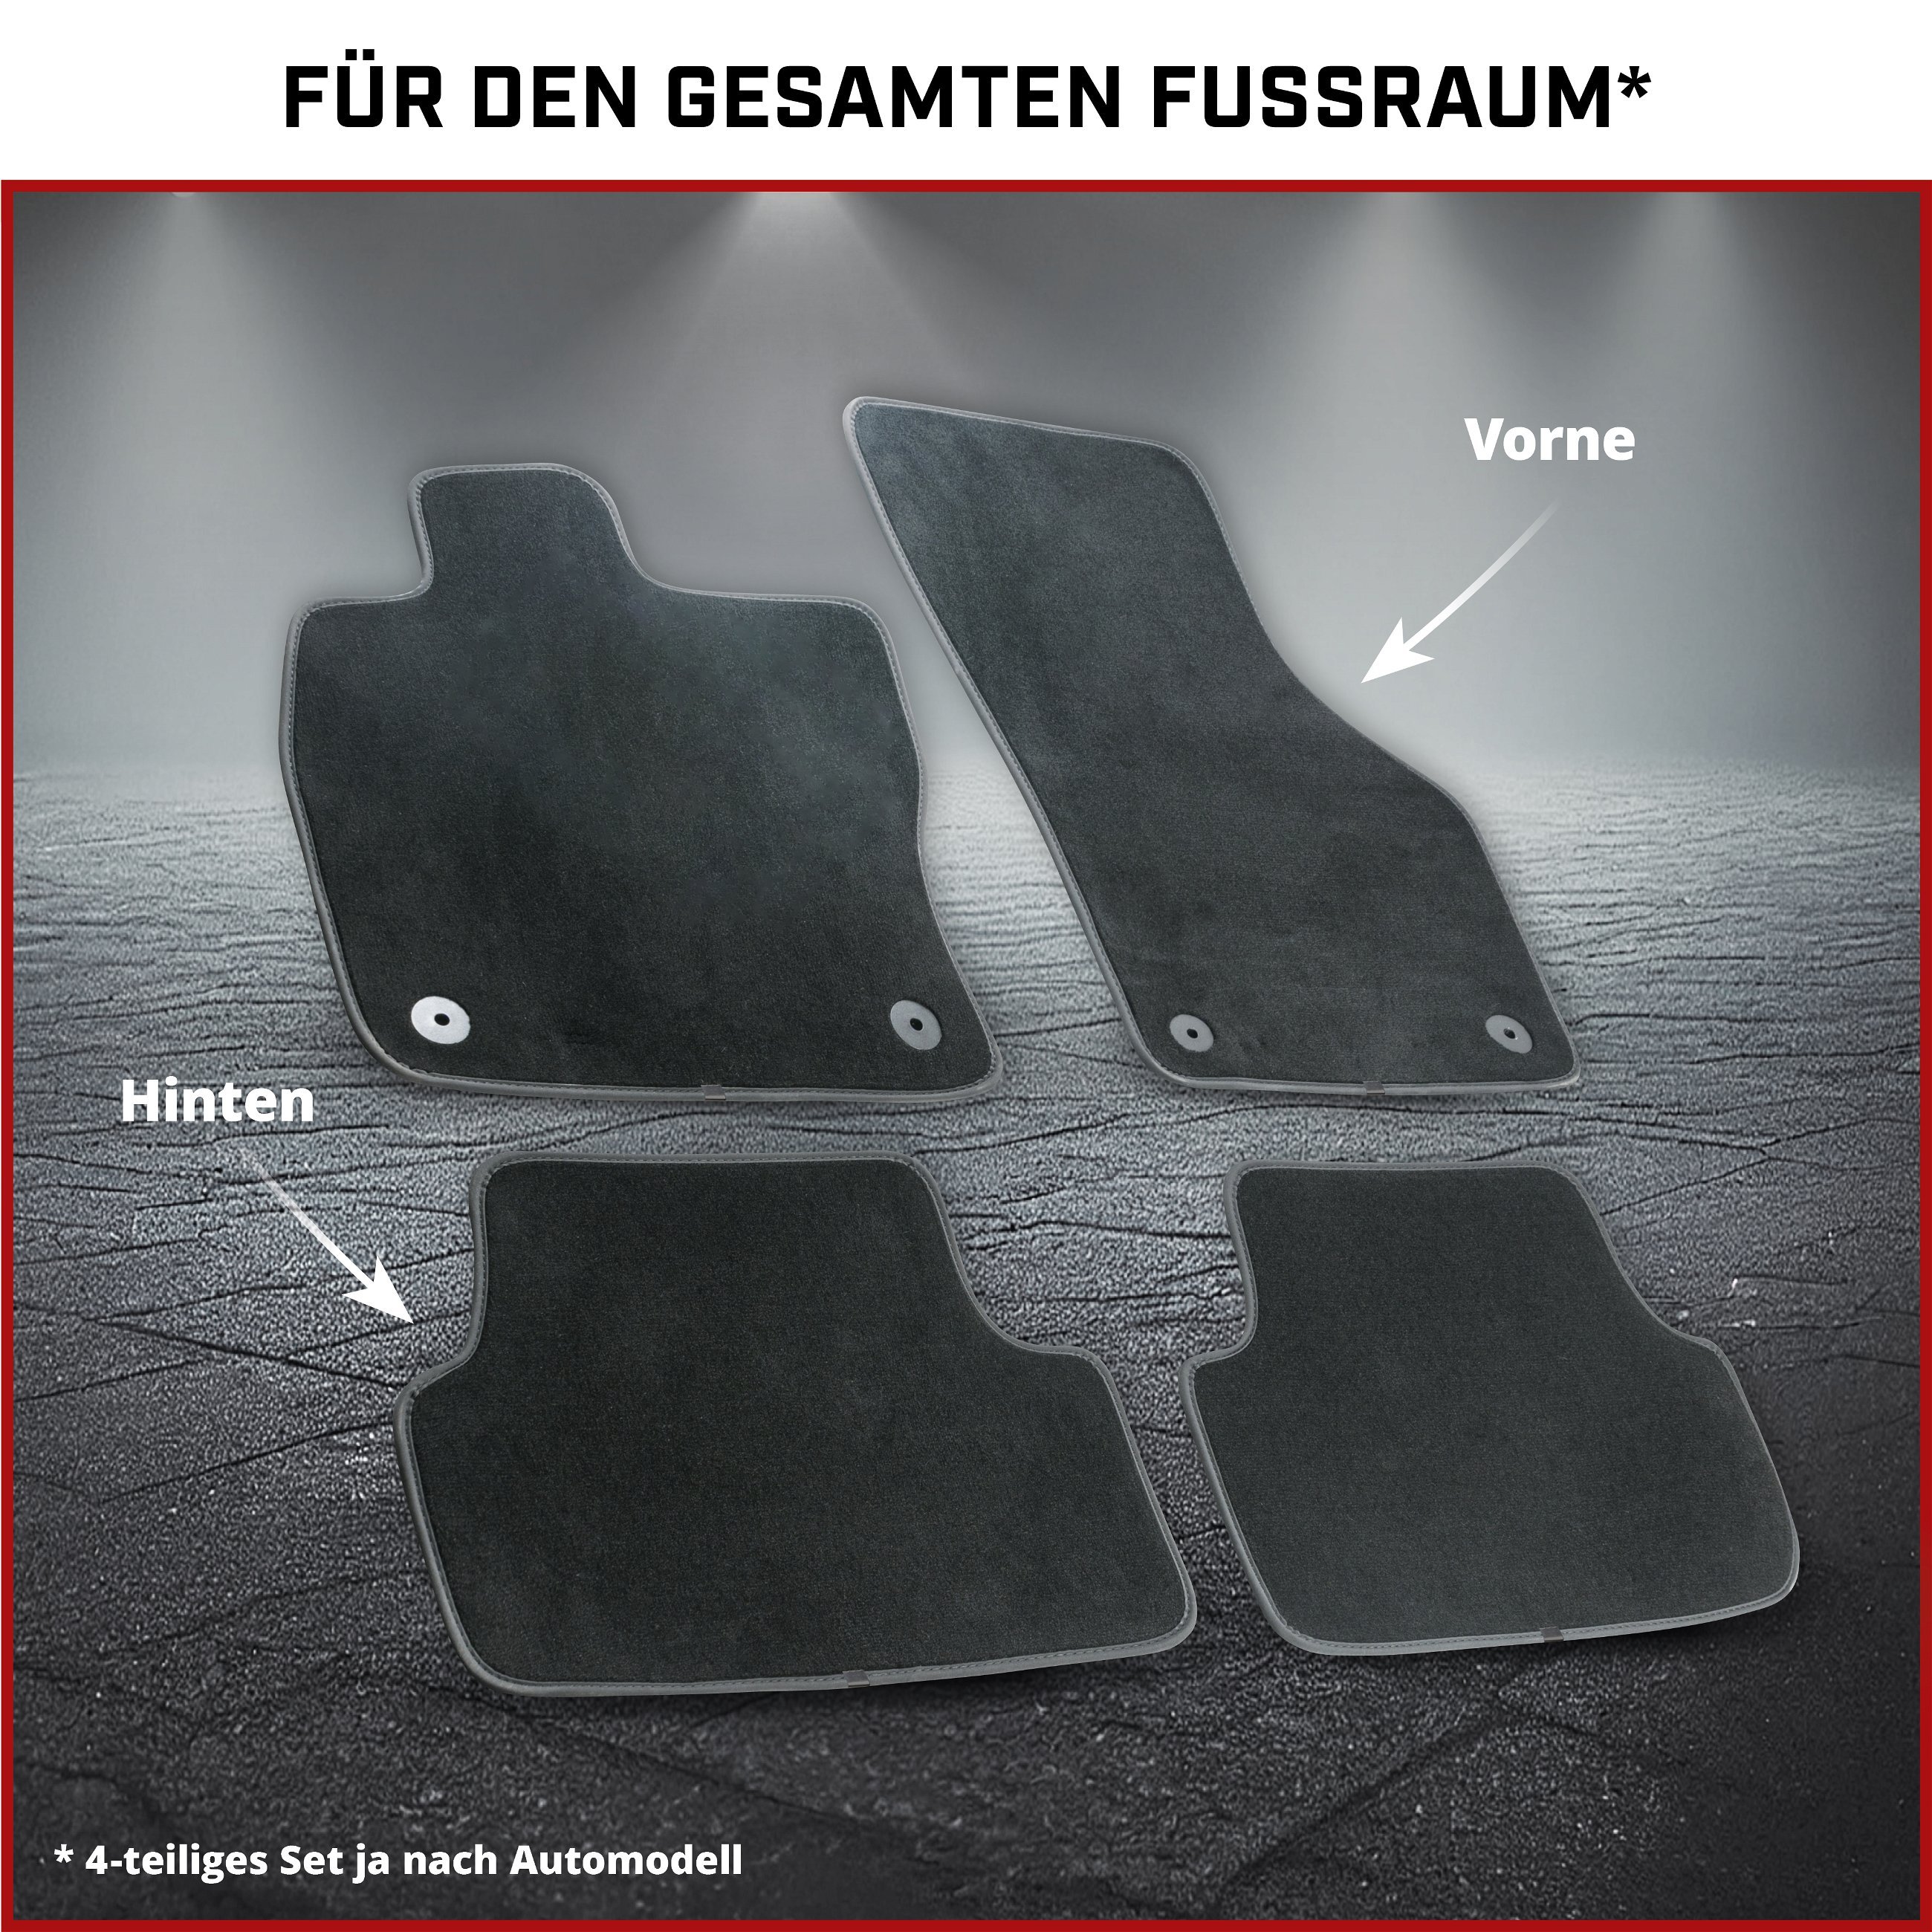 Premium Fußmatten für BMW X5 (E53) 01/2000-12/2006